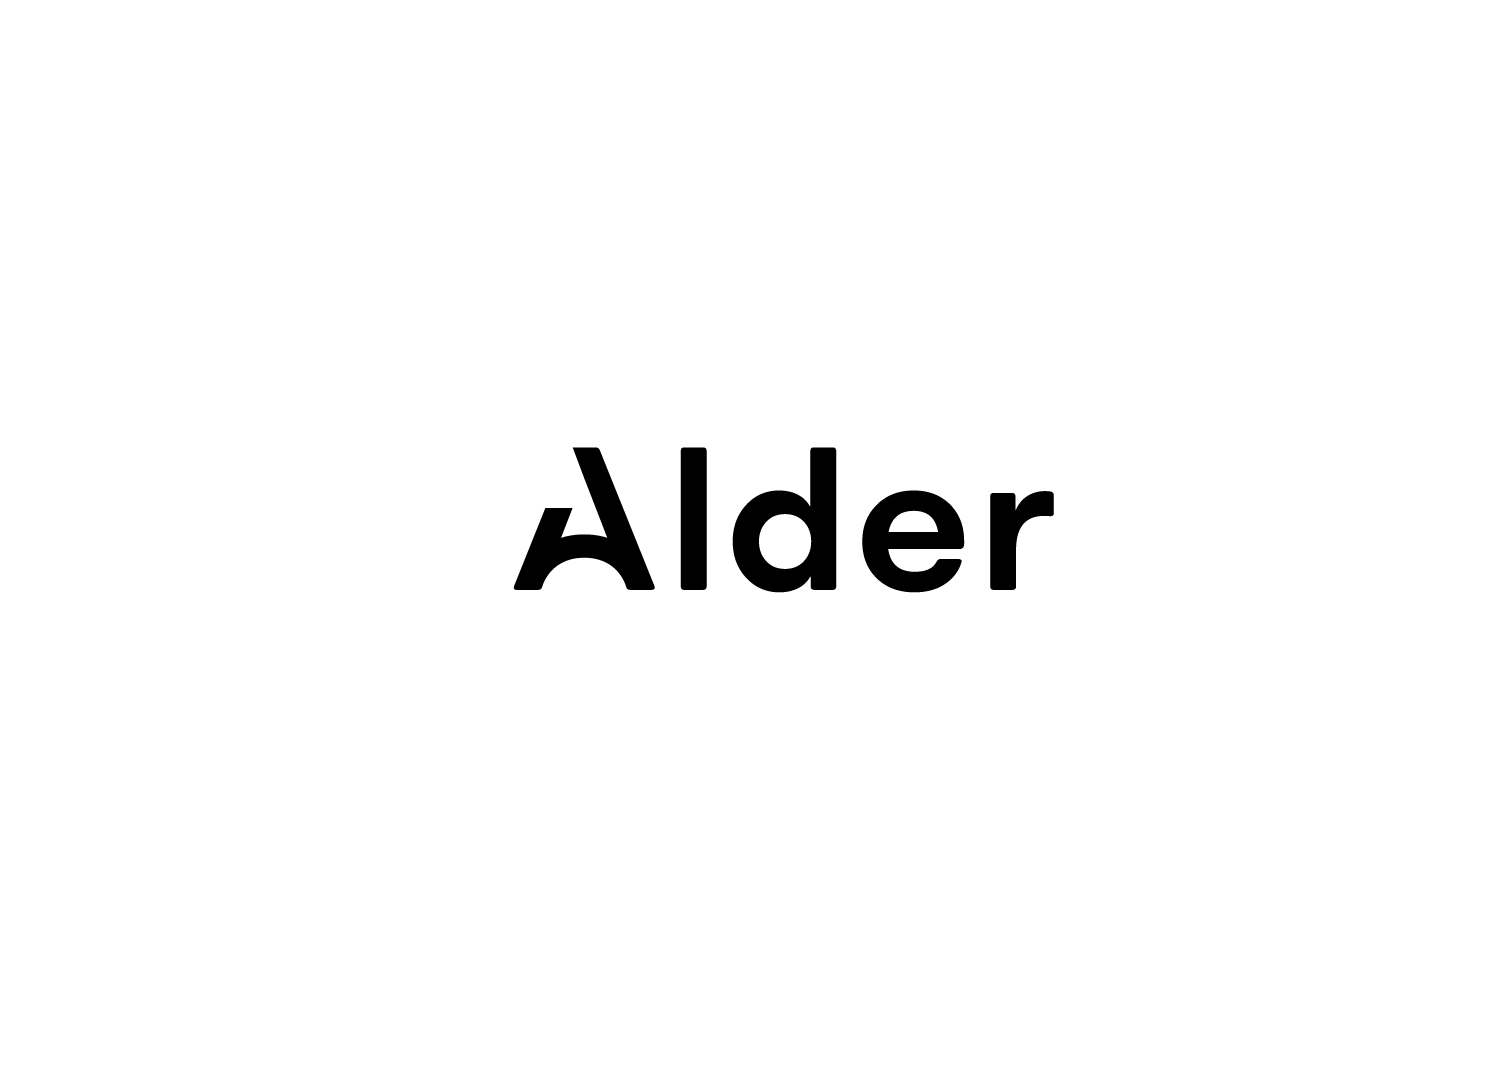 Alder (Copy)